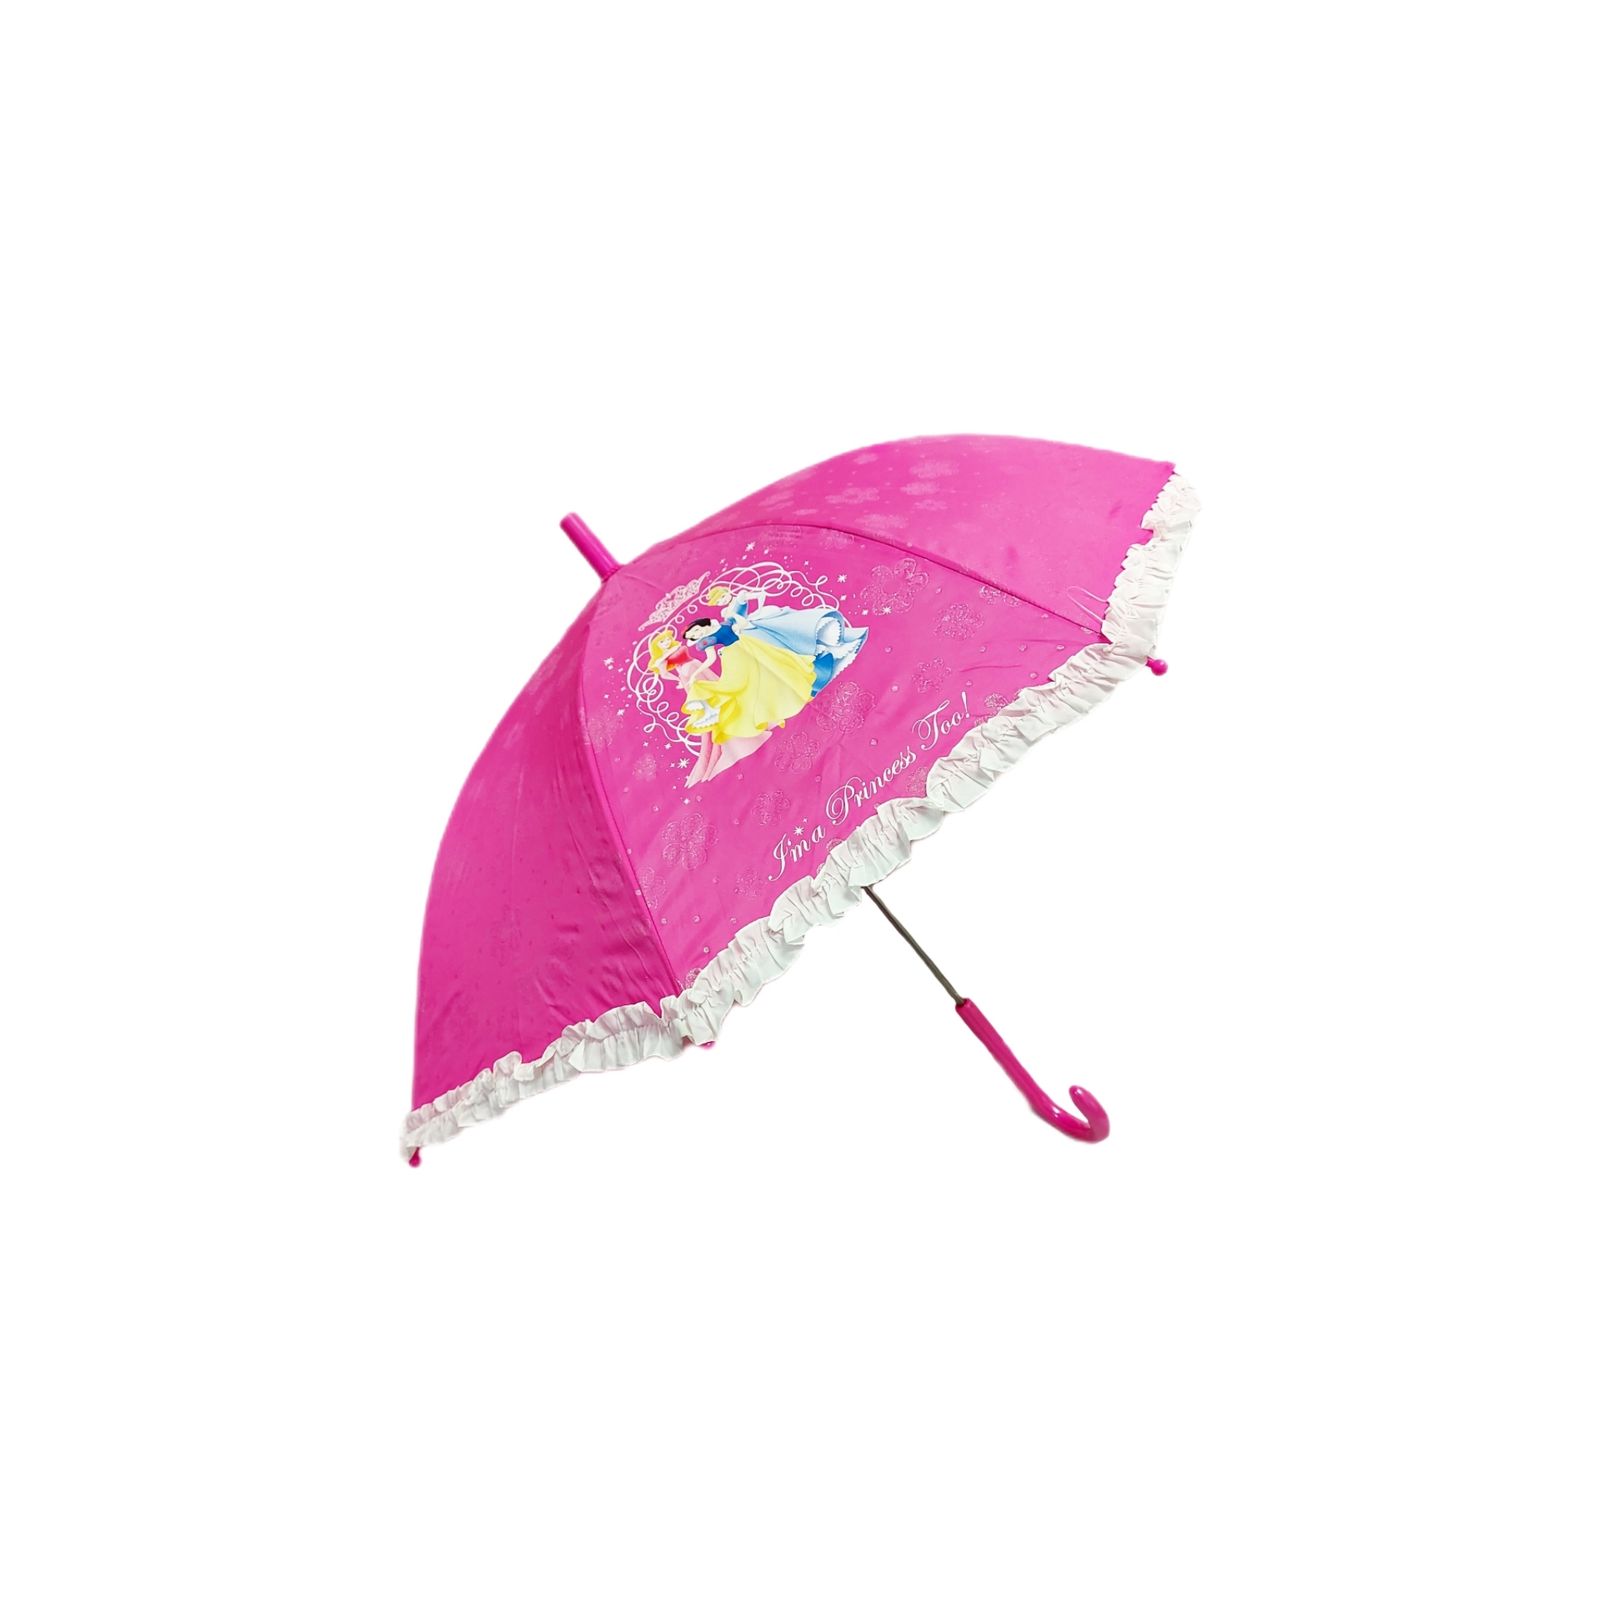 چتر بچگانه دیزنی مدل پرنسس کد 01 -  - 1